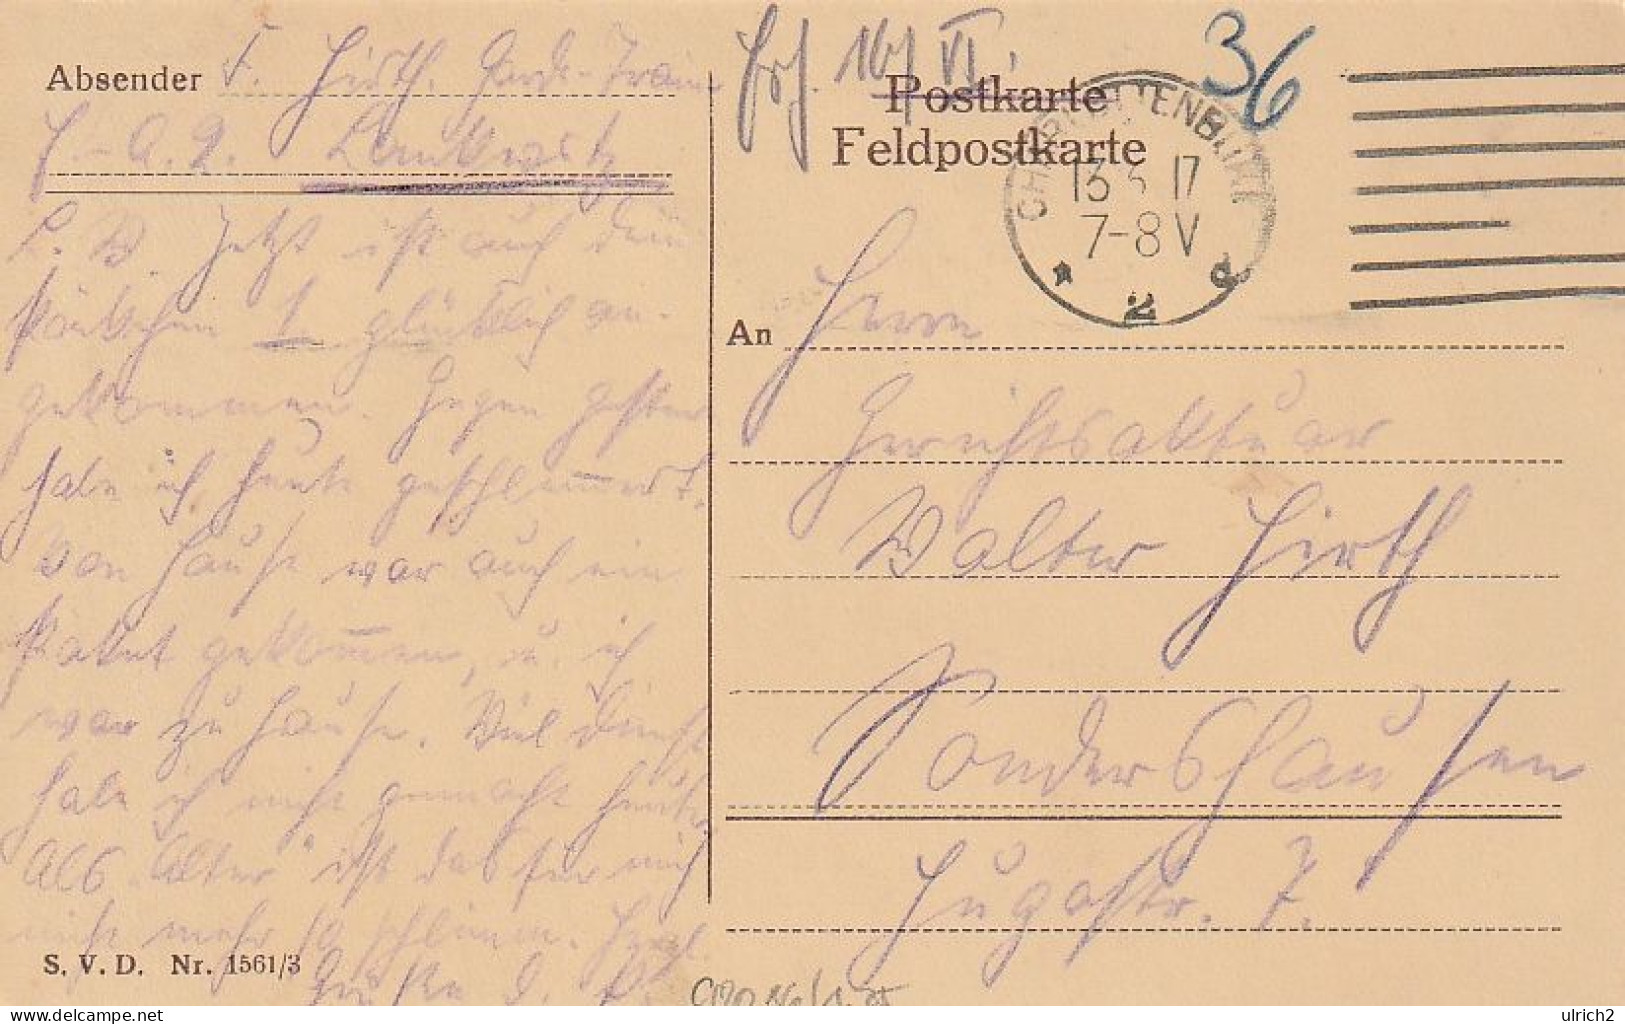 AK Der Sichere Schuß - Halt Still Maxe... - Künstlerkarte Pommerhanz München - Humor - Feldpost 1917 (69357) - Weltkrieg 1914-18